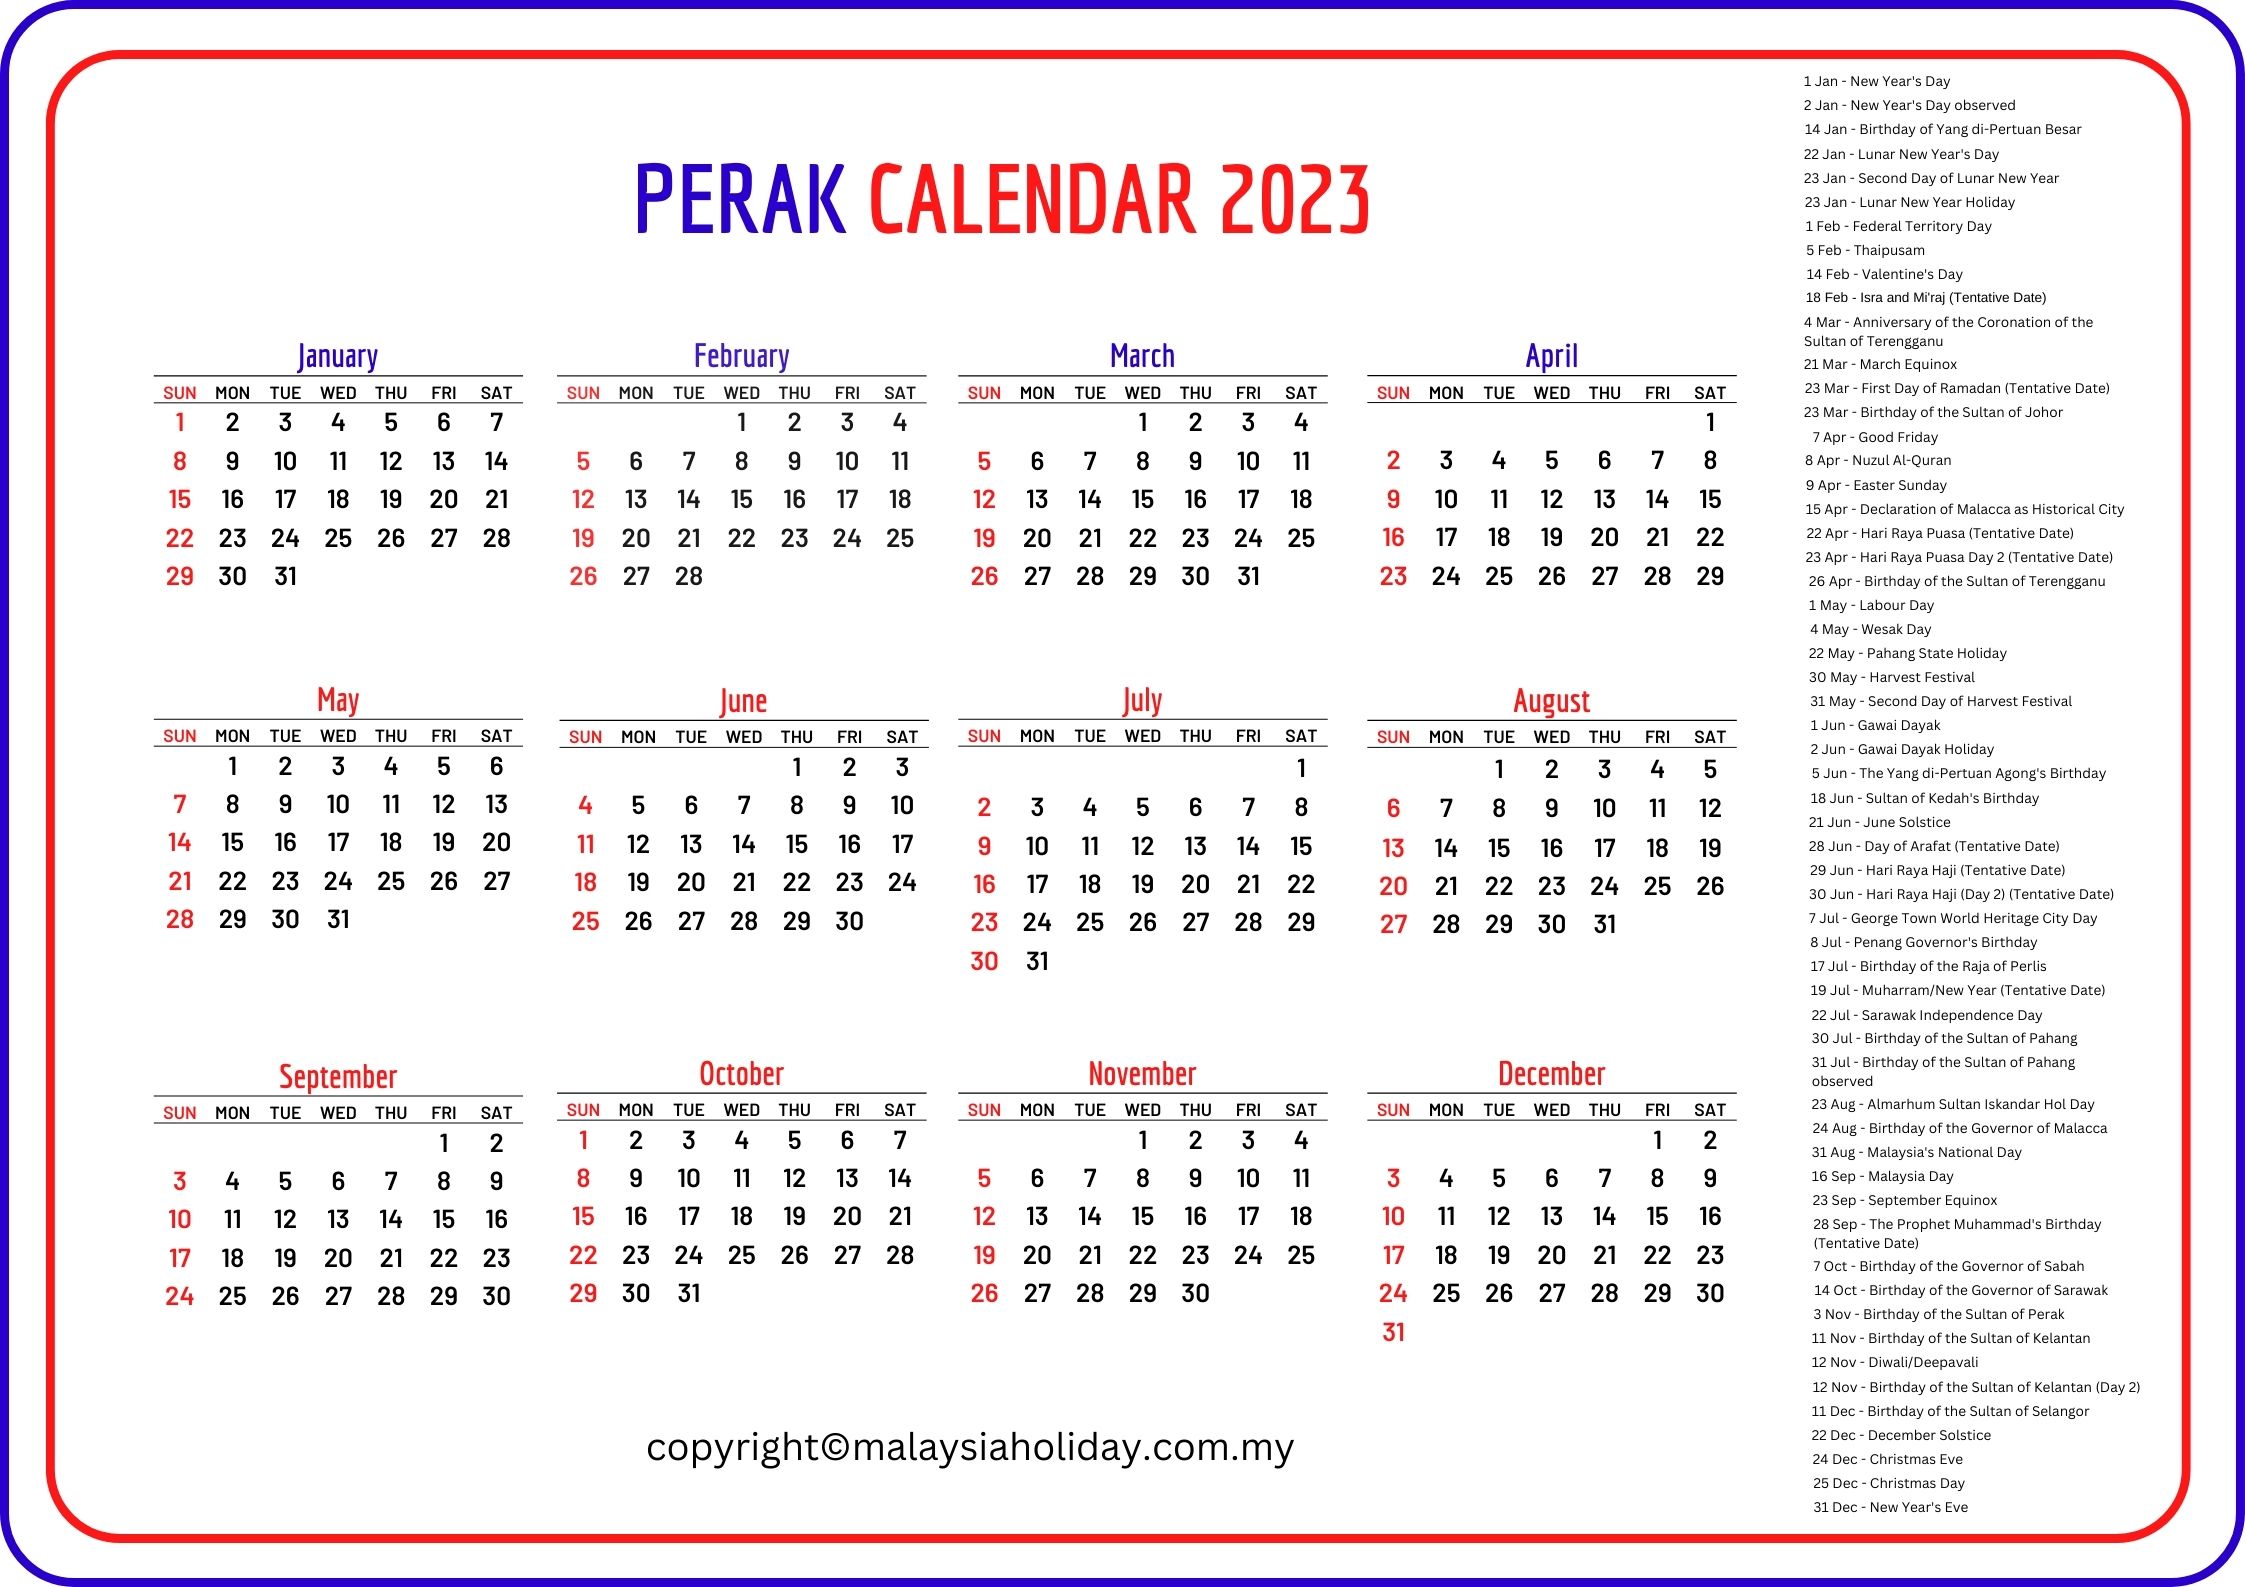 Perak Public Holidays 2023